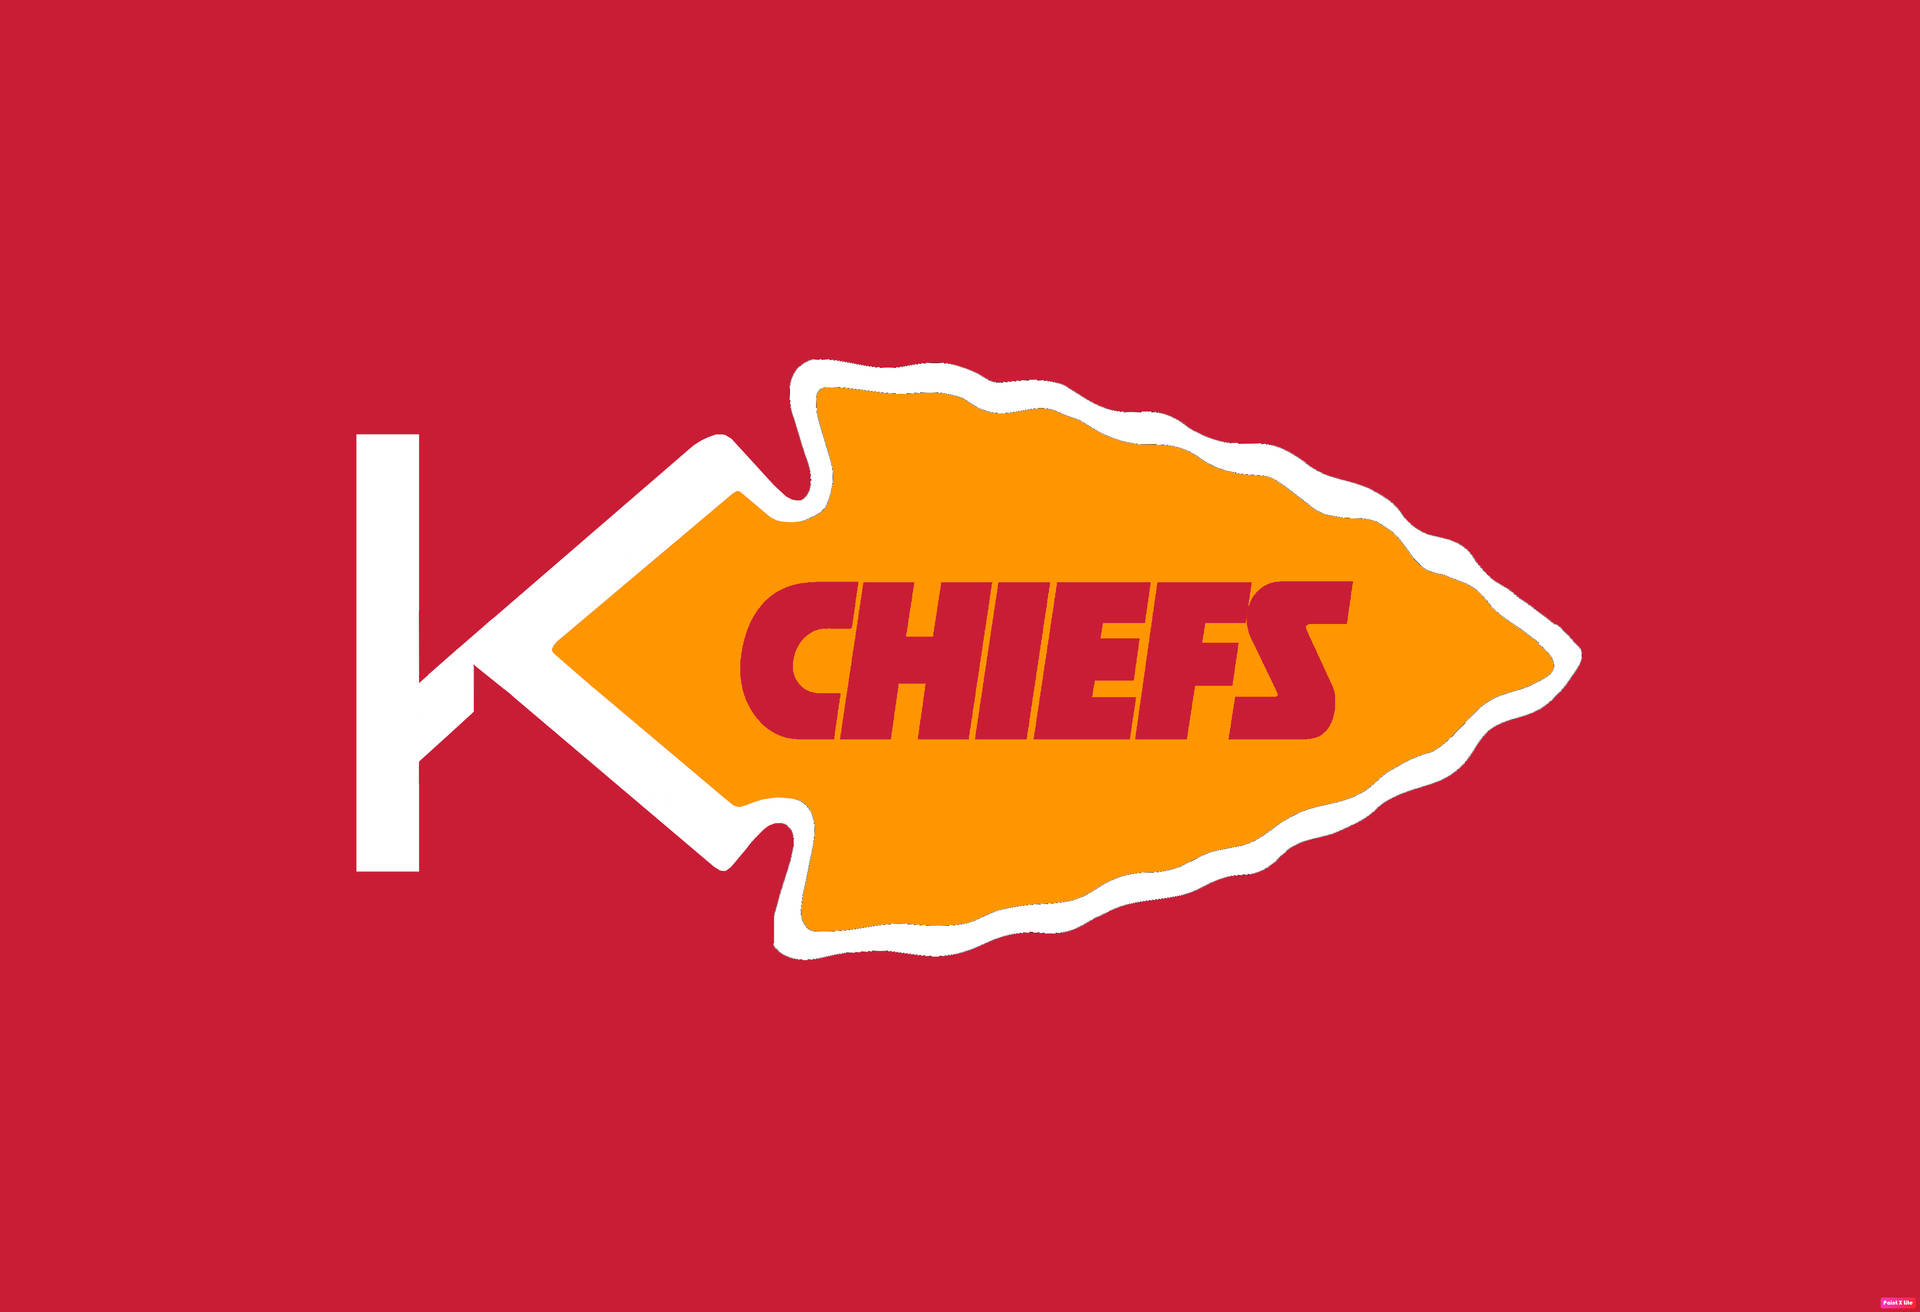 Kansas City Chiefs Logo Reimagined Wallpaper